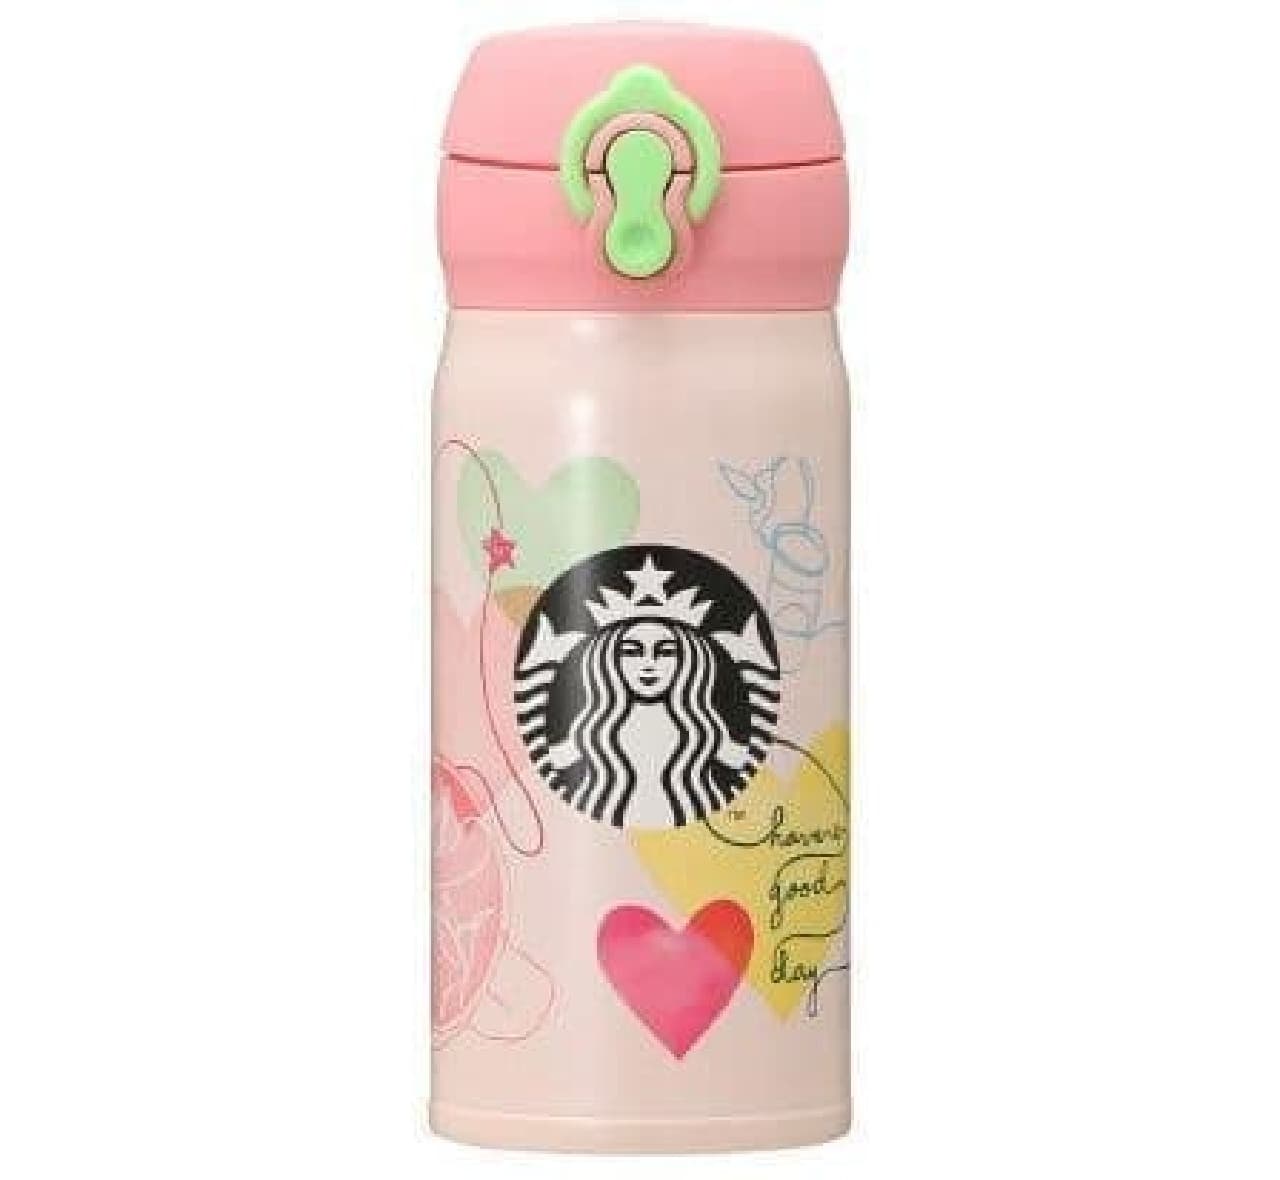 Starbucks "Handy Stainless Bottle Heart Connection 350ml"